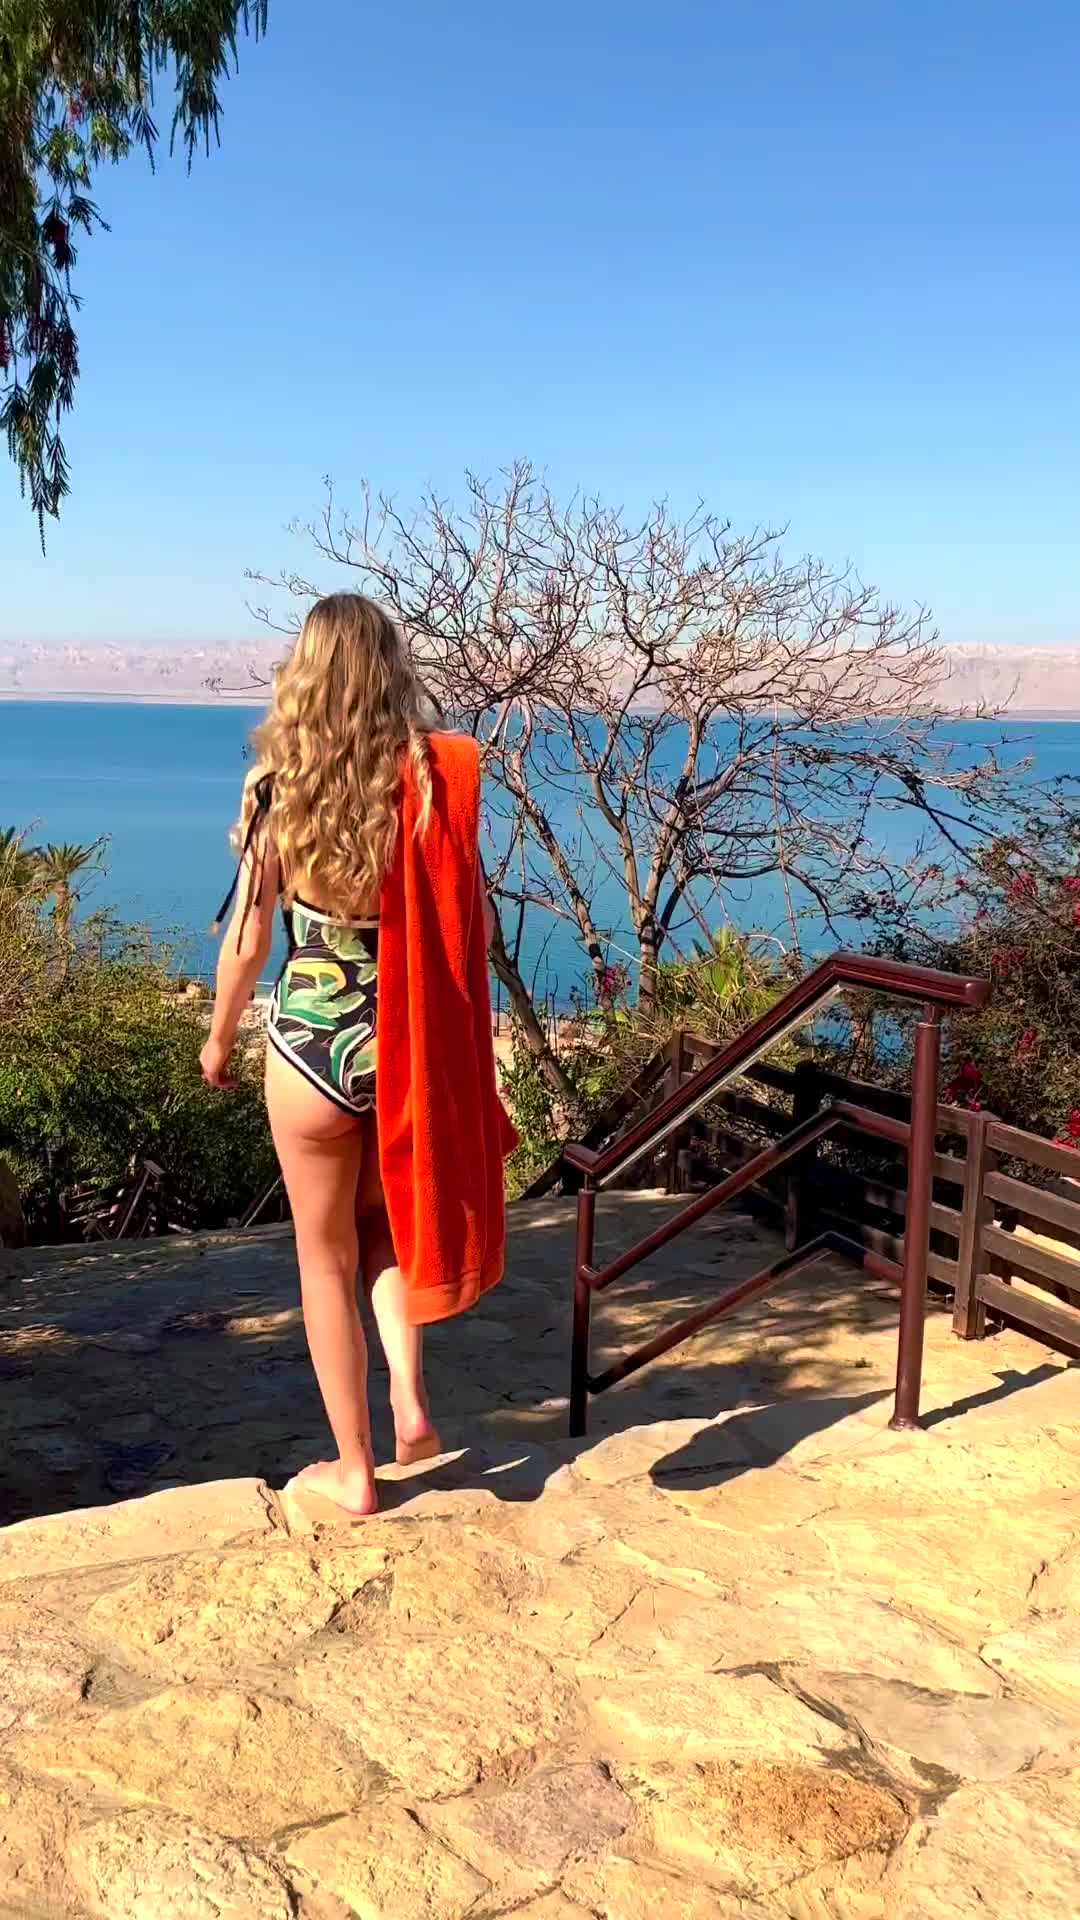 Awaiting Summer at Dead Sea Marriott 🏖️☀️